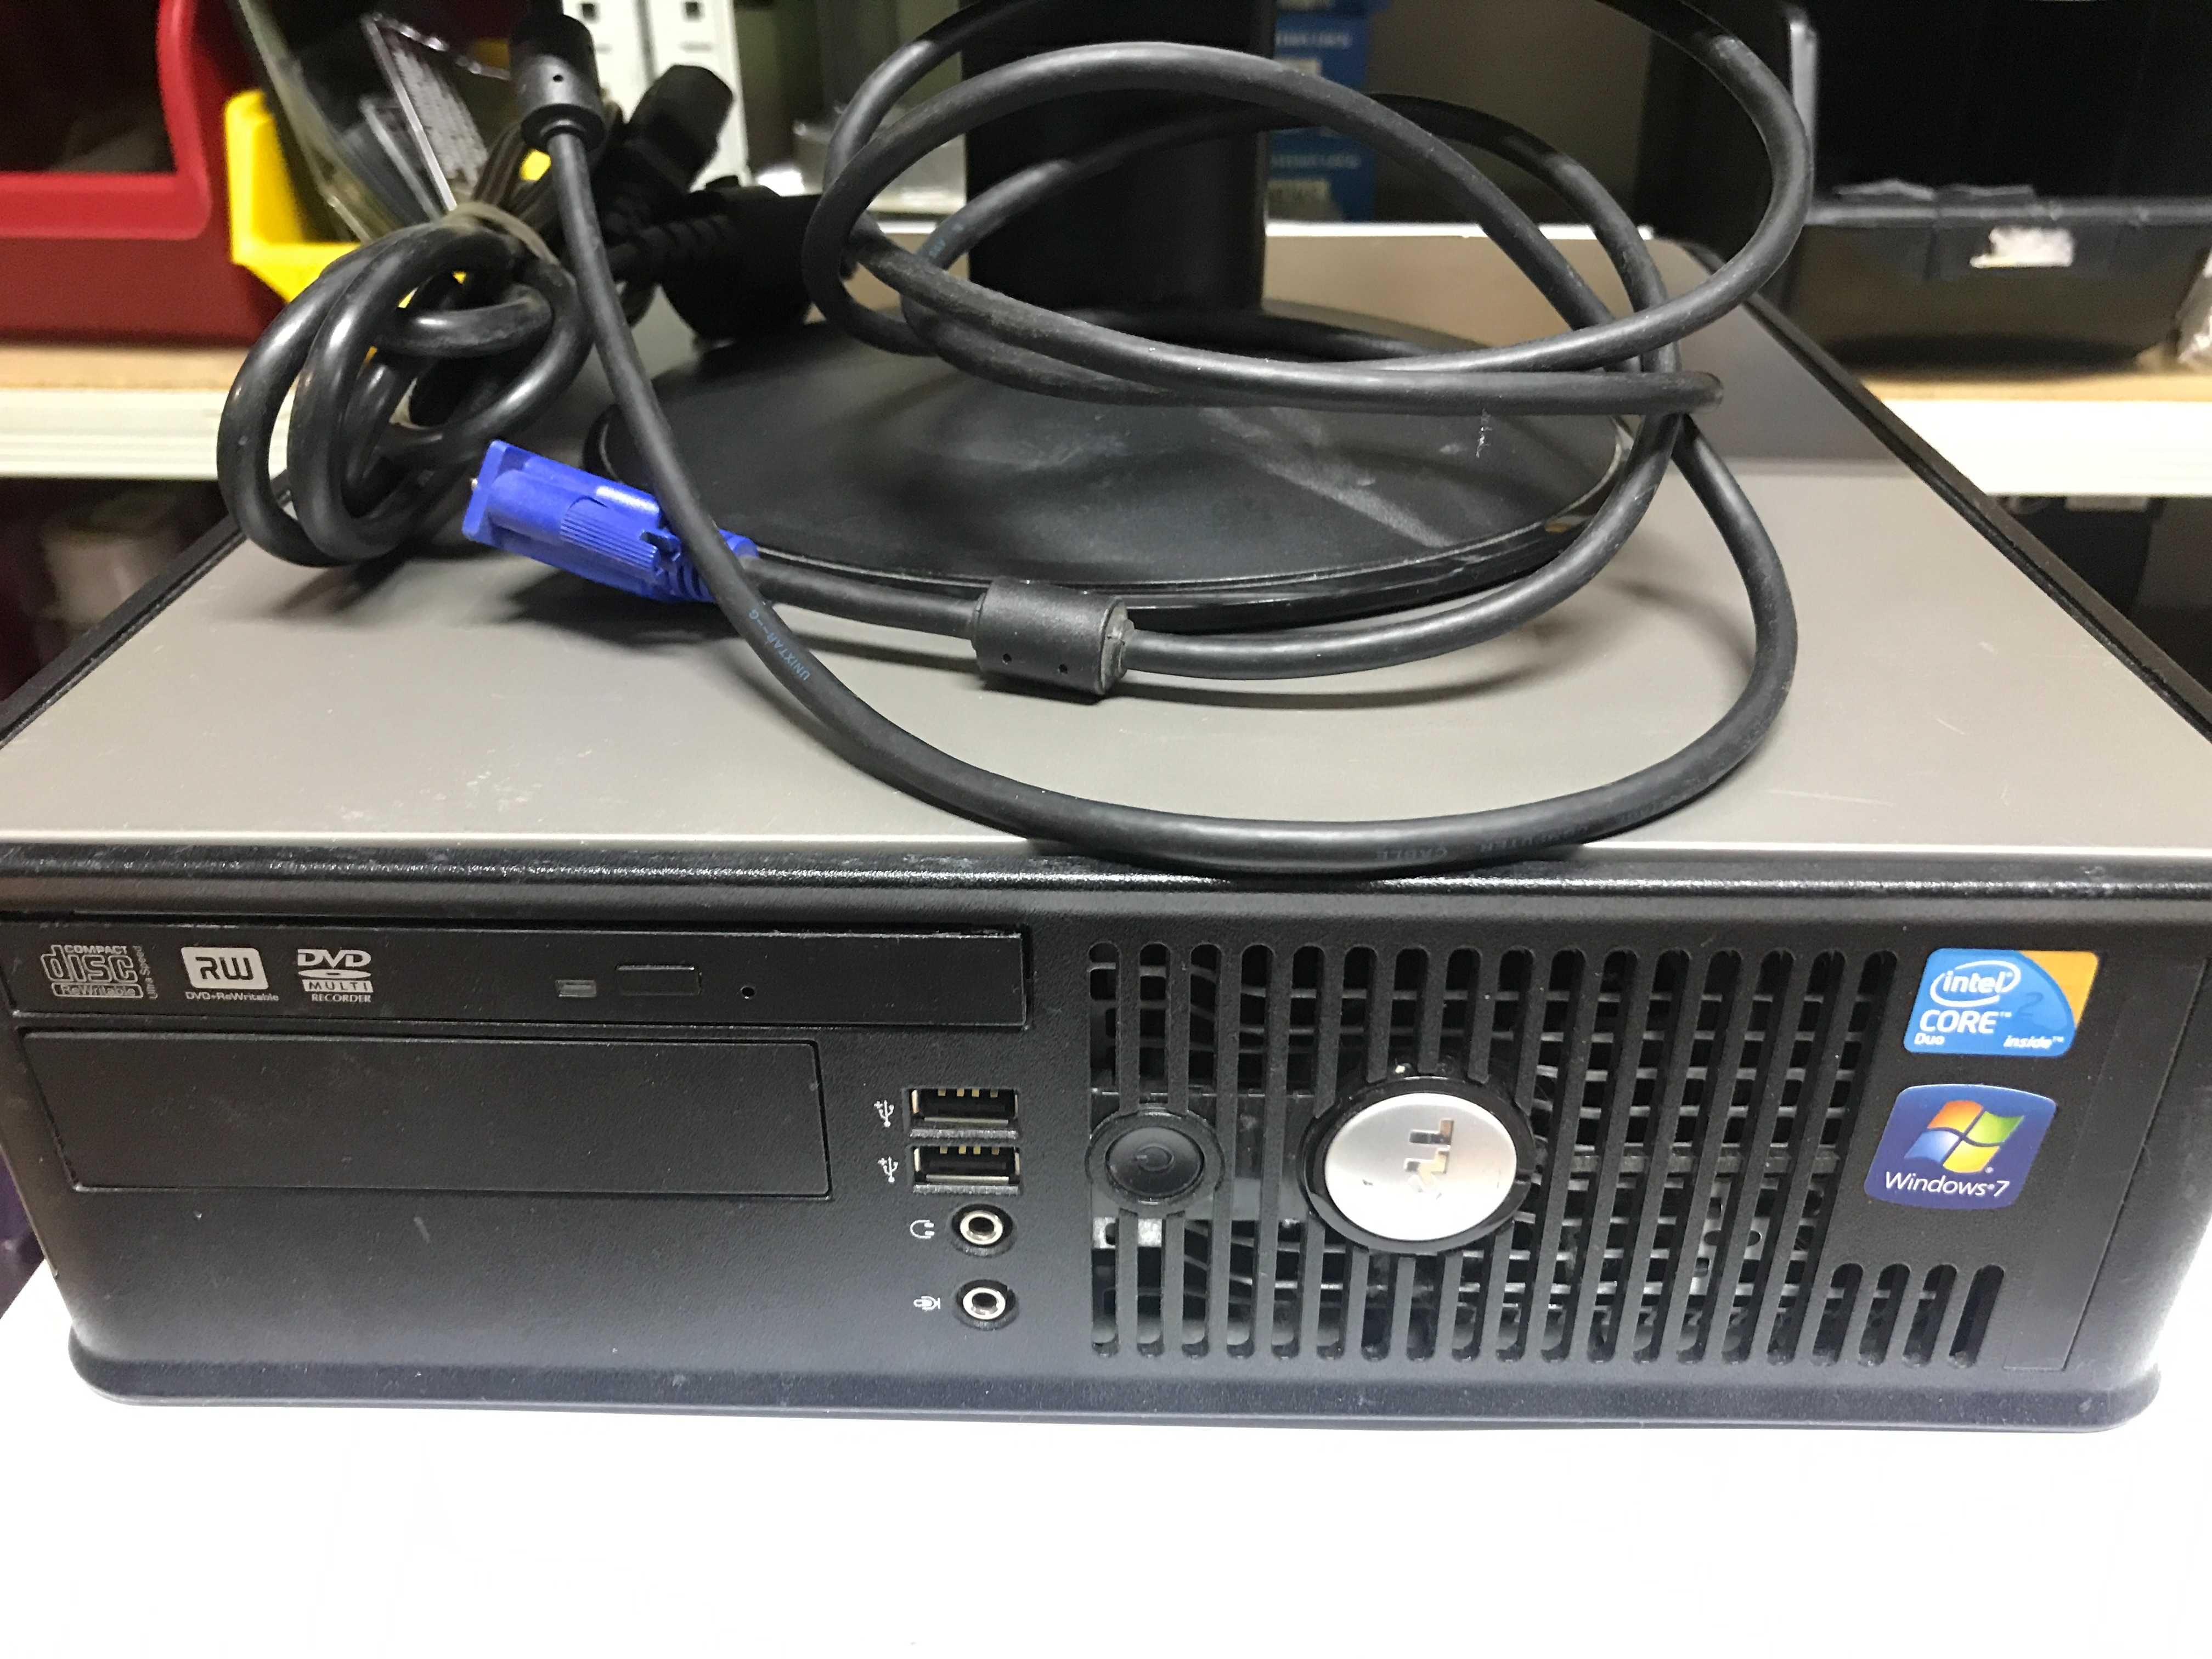 Komputer Dell Opti Plex 780 Monitor LG 19 SSD 120GB Zestaw Komputerowy